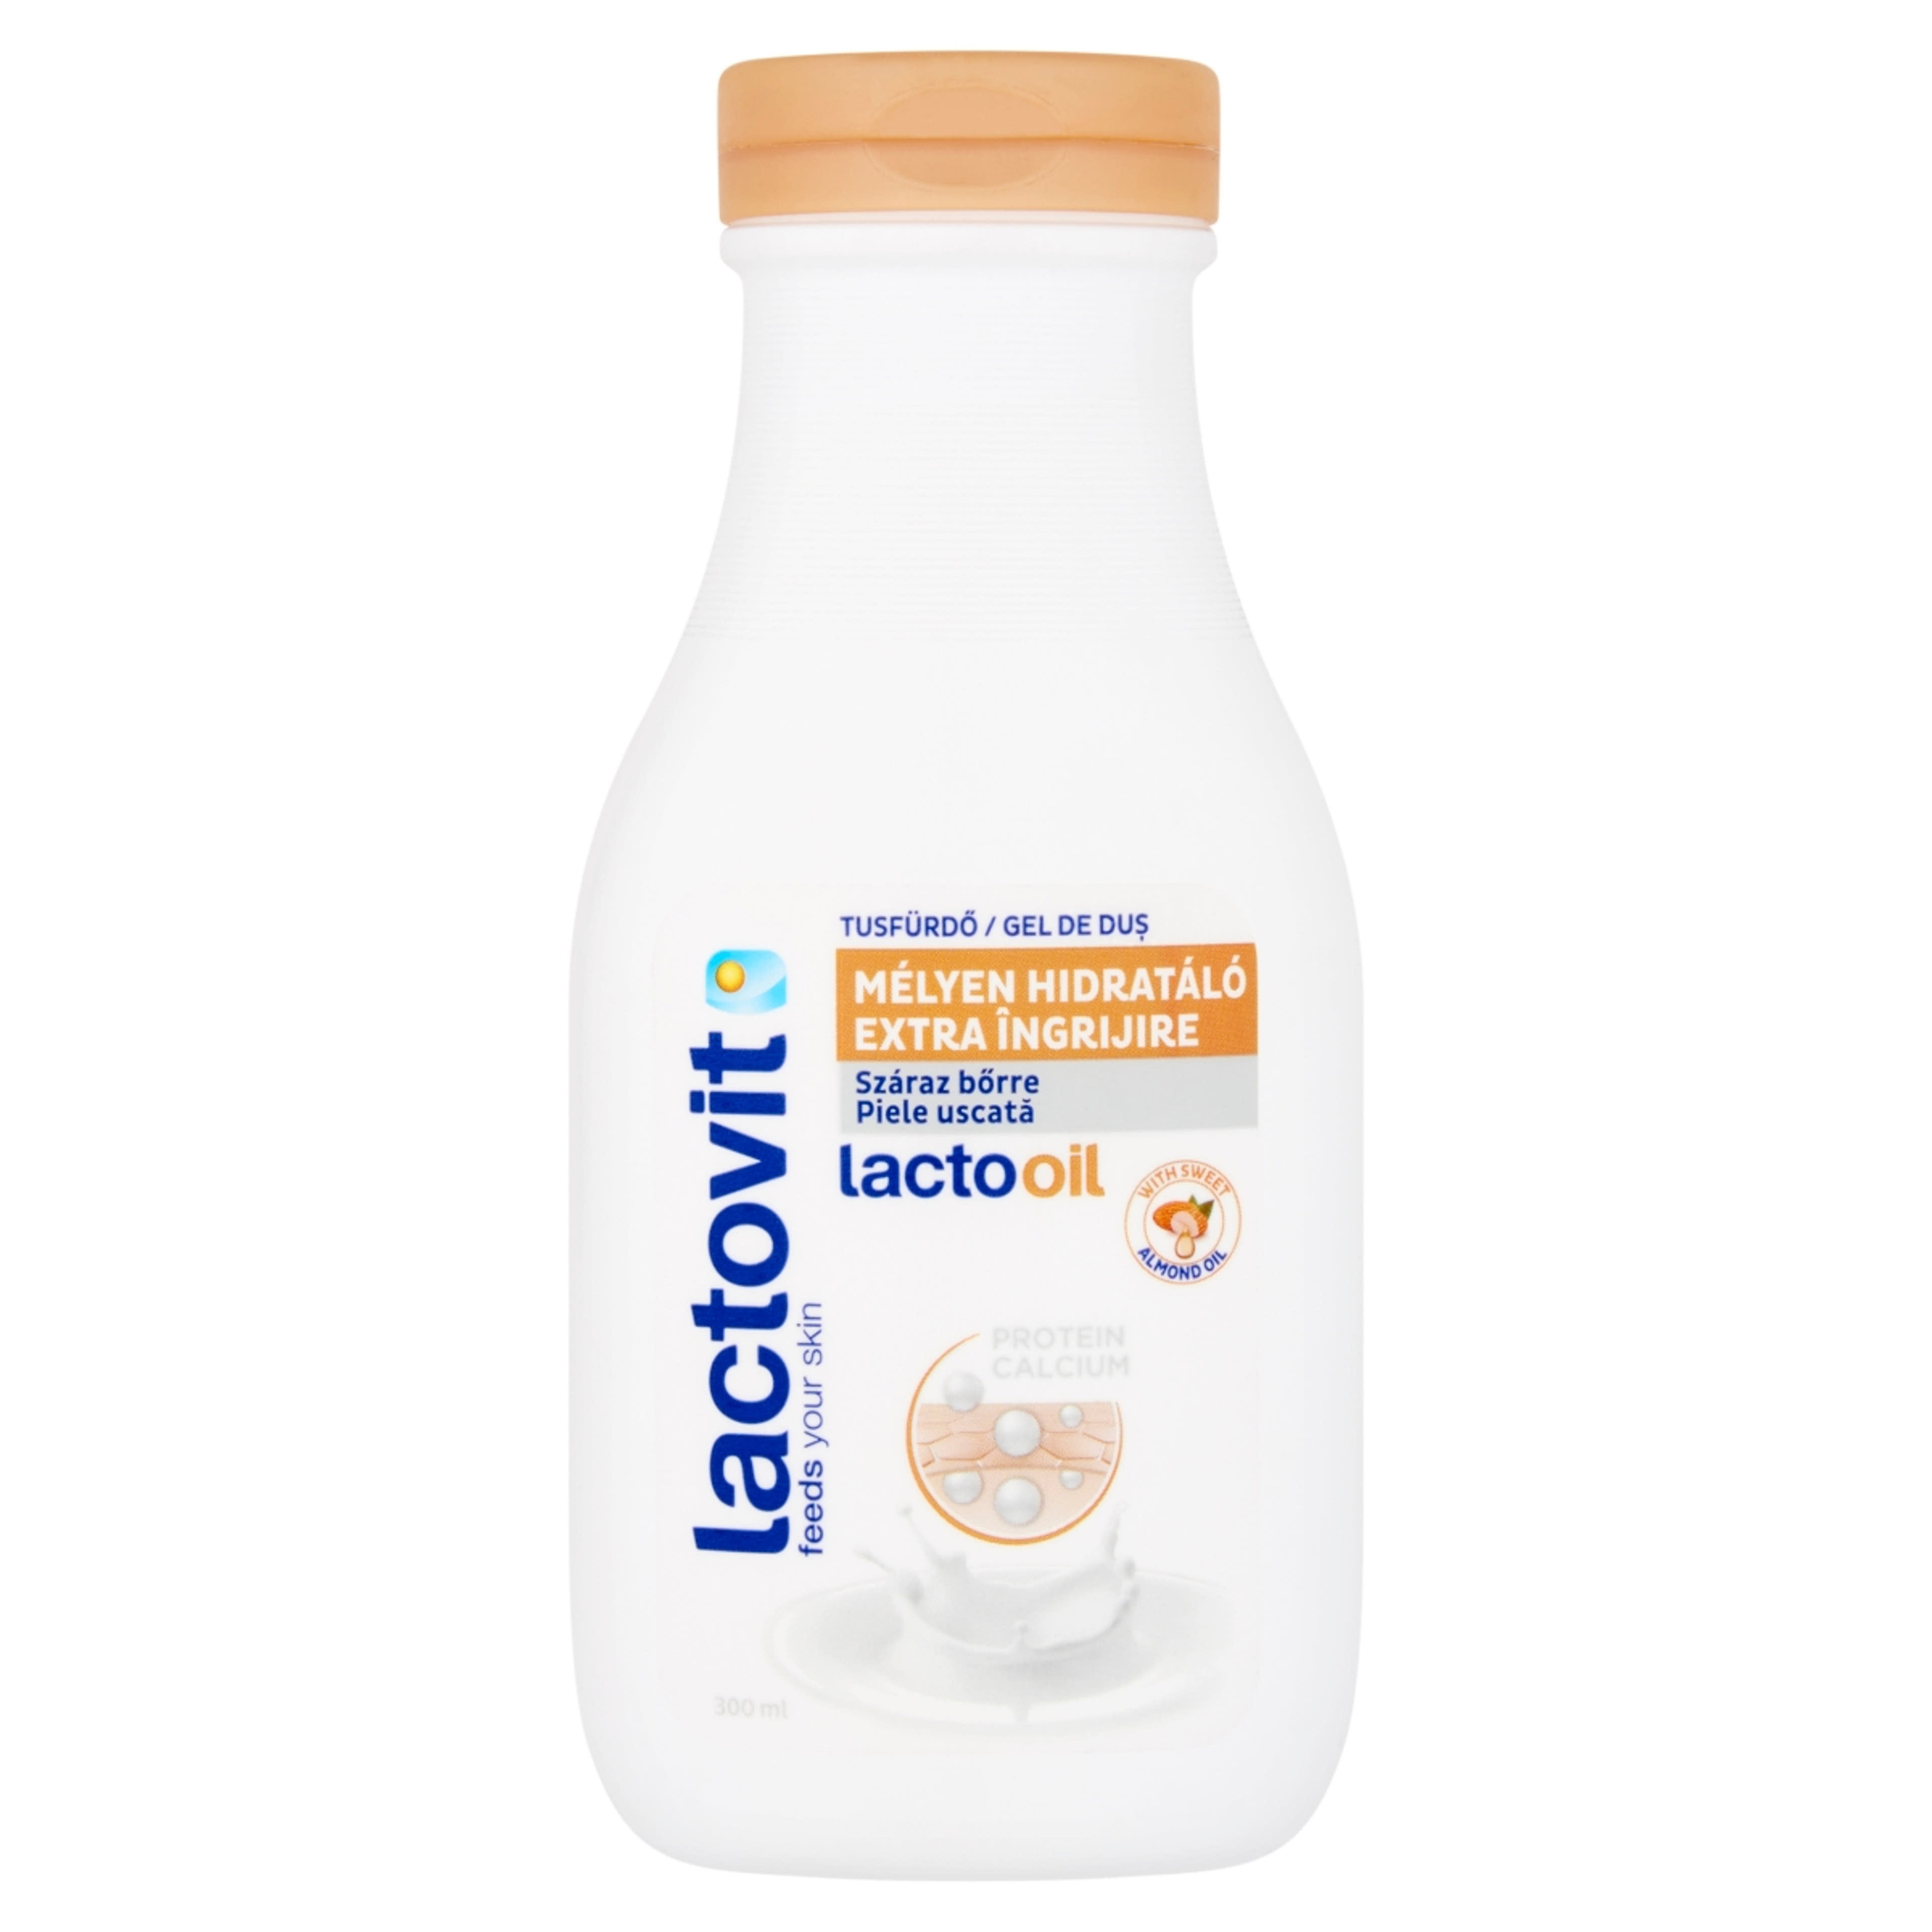 Lactovit tusfürdő Lactooil - 300 ml-1